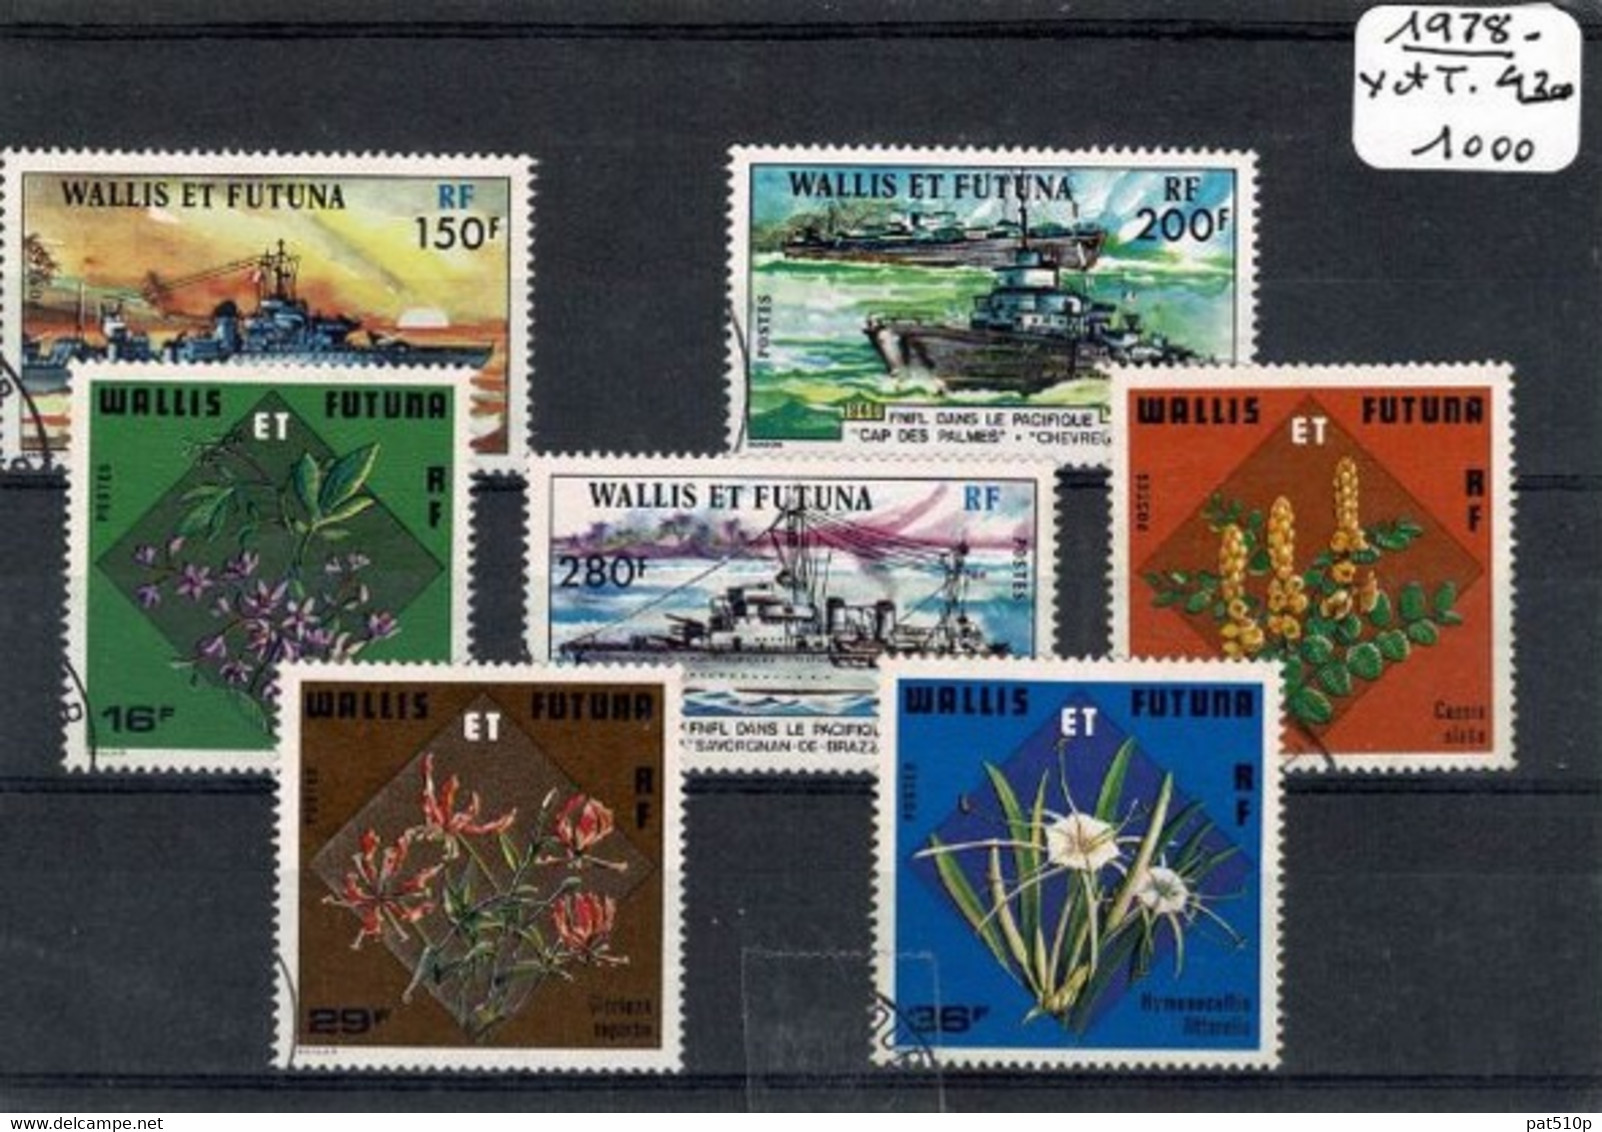 WALLIS FUTUNA Lot 1978 - Used Stamps